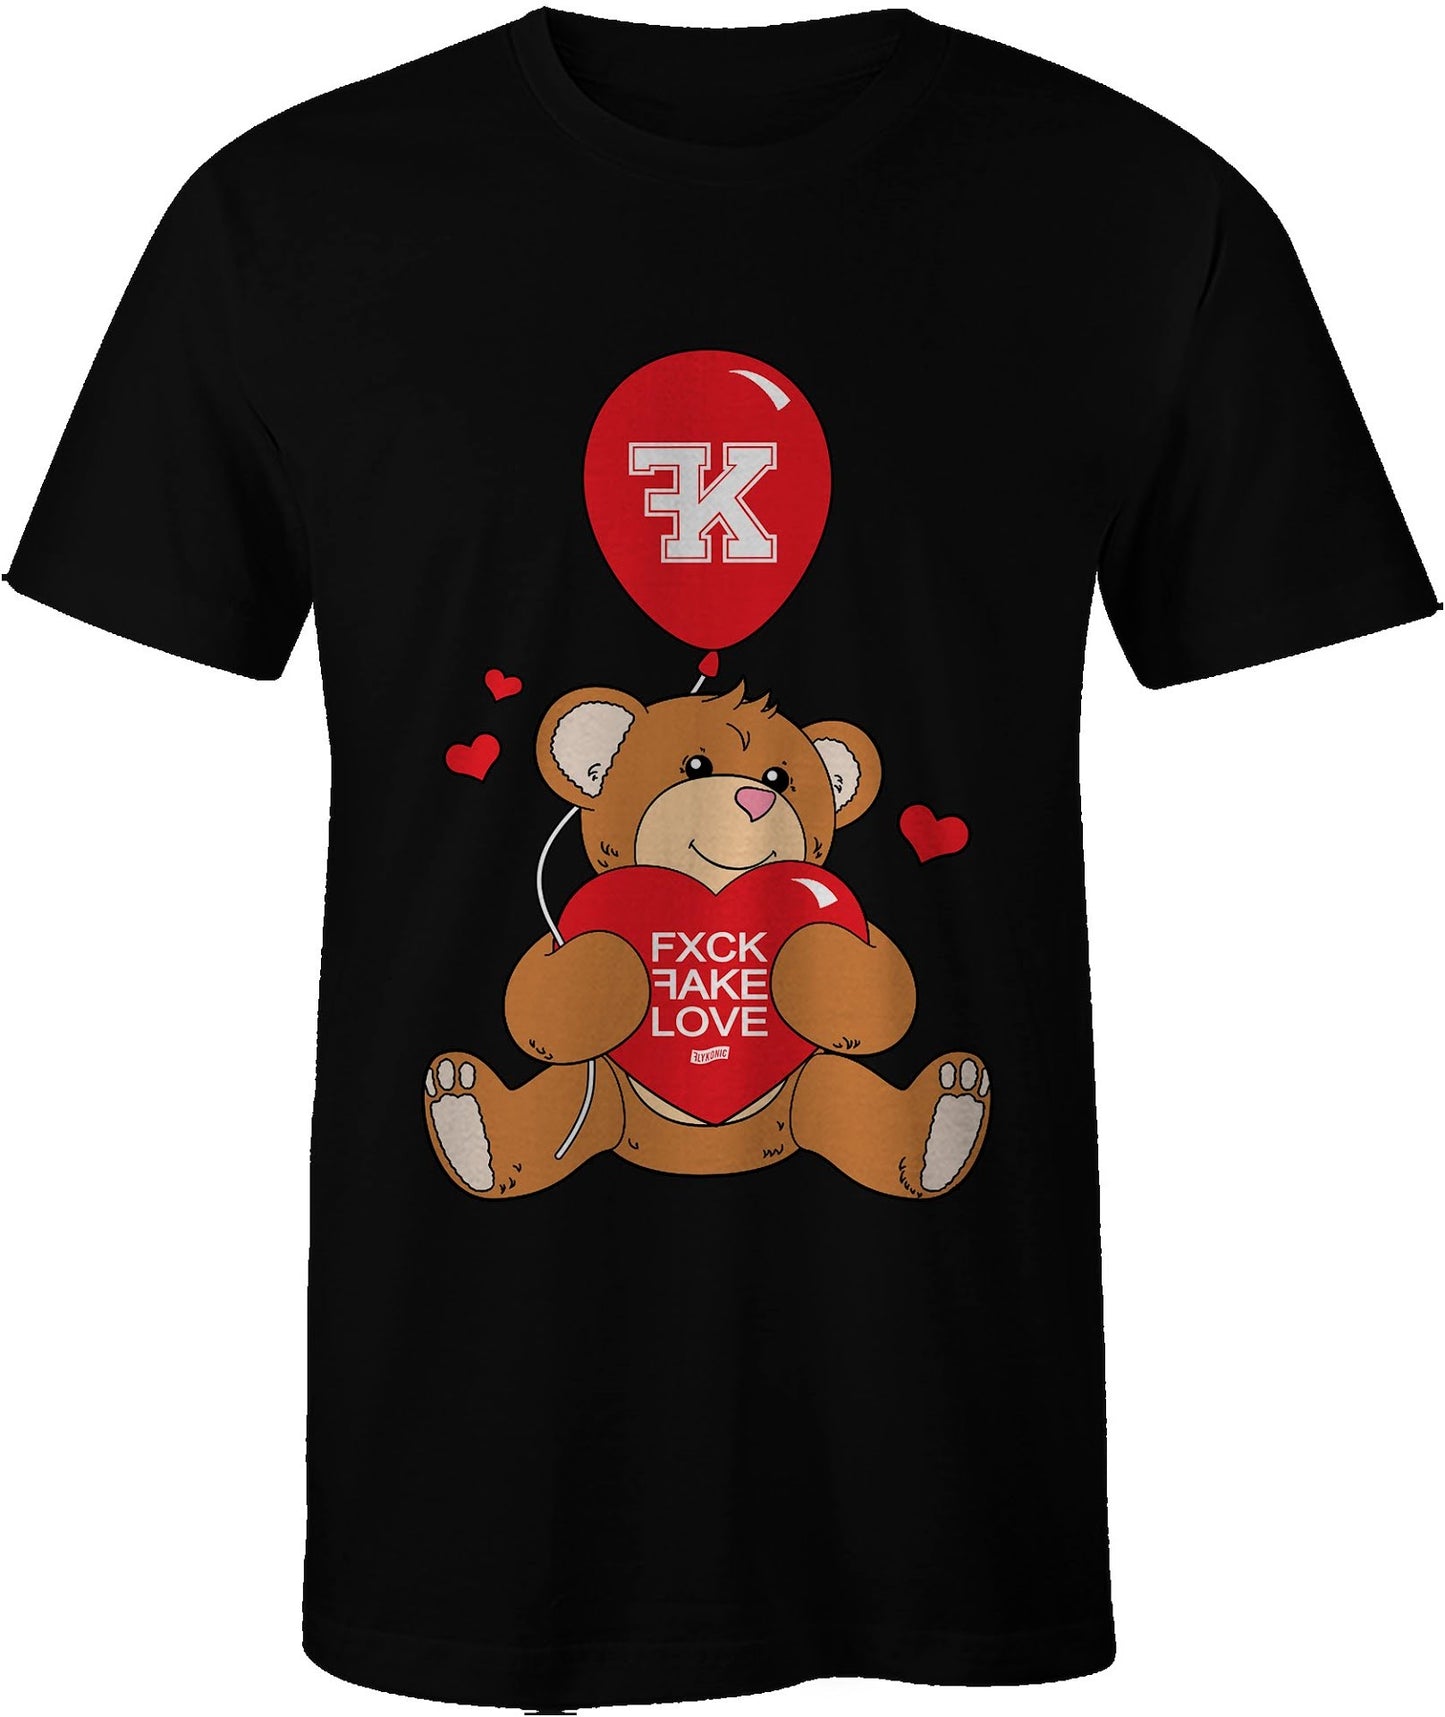 "Fxck FAKE Love Bear"